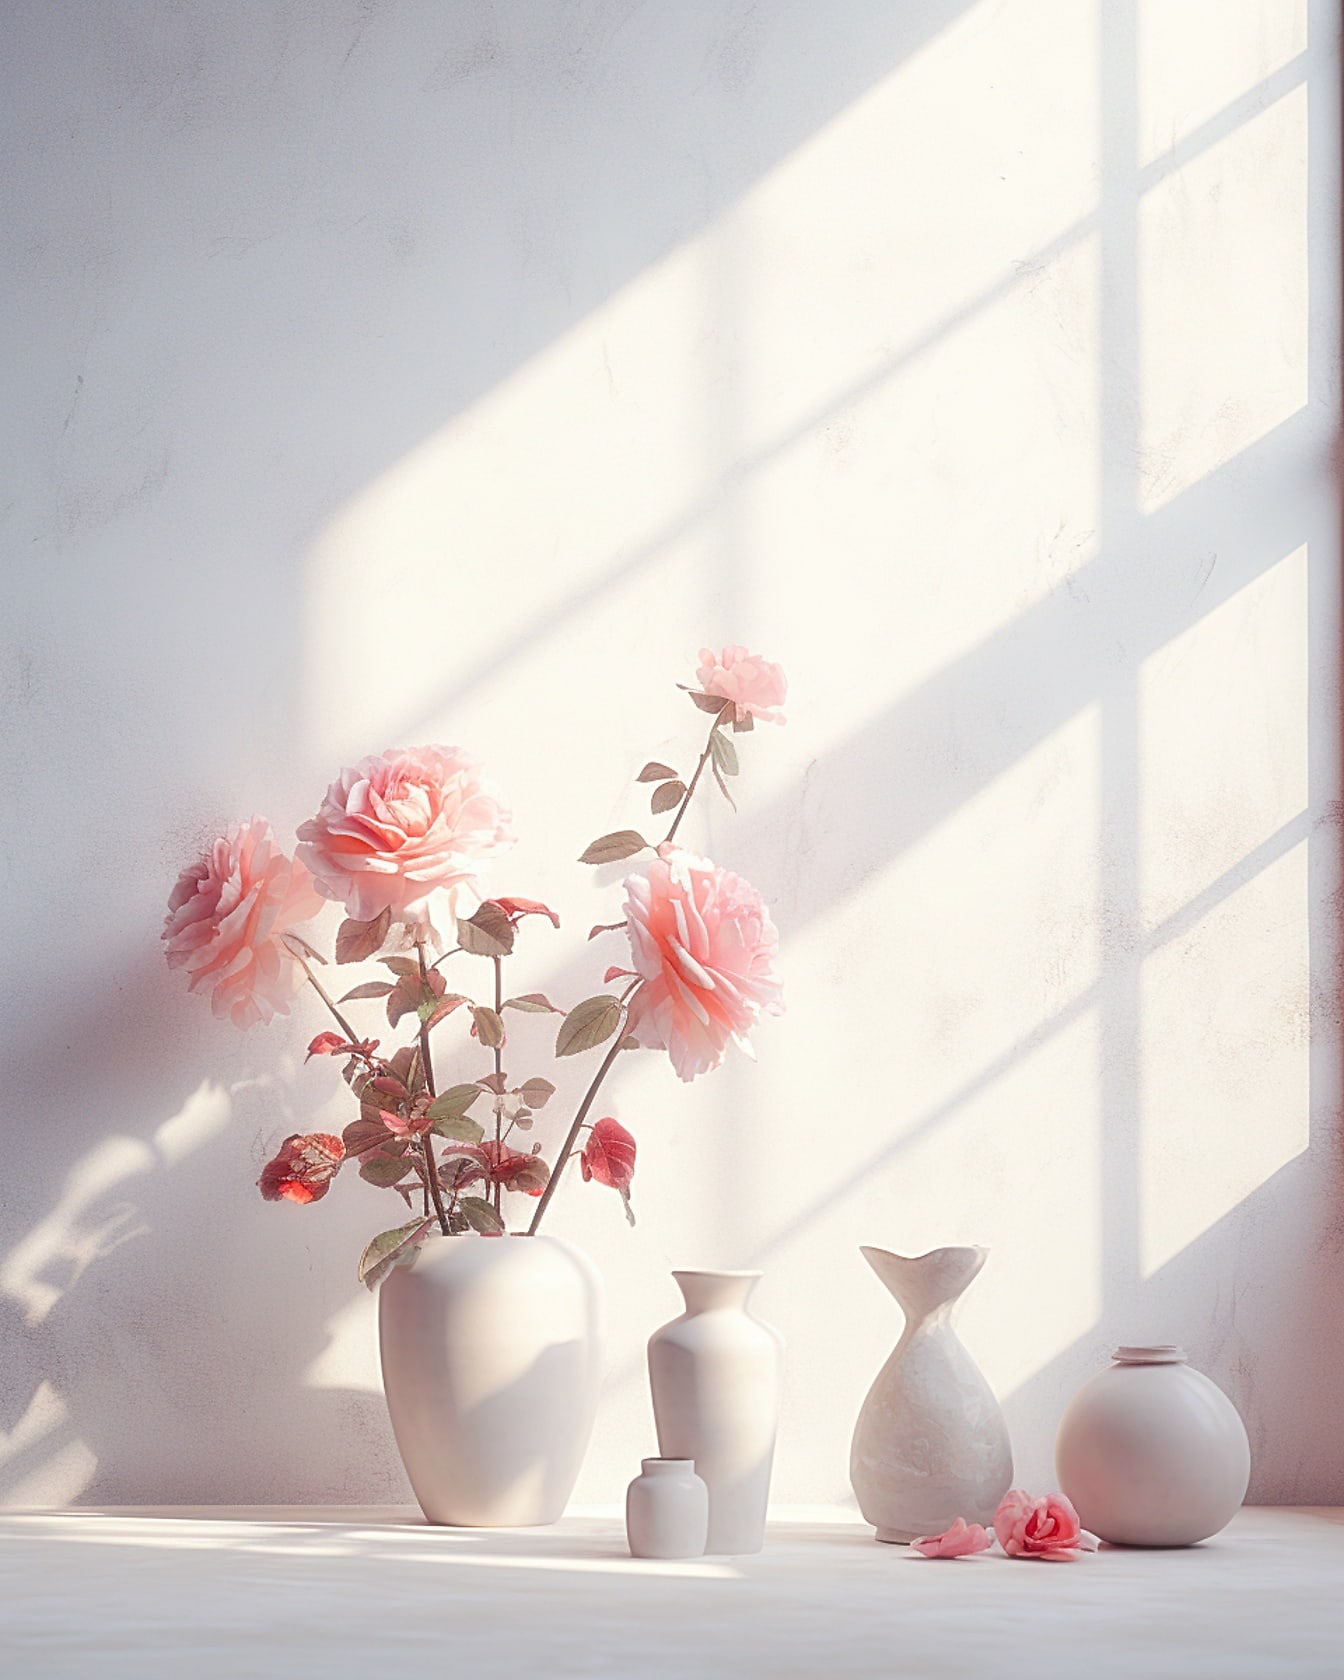 Pembemsi çiçekler ve bej vazolar ile vazo pencerenin yumuşak ışığında bir masa üzerinde